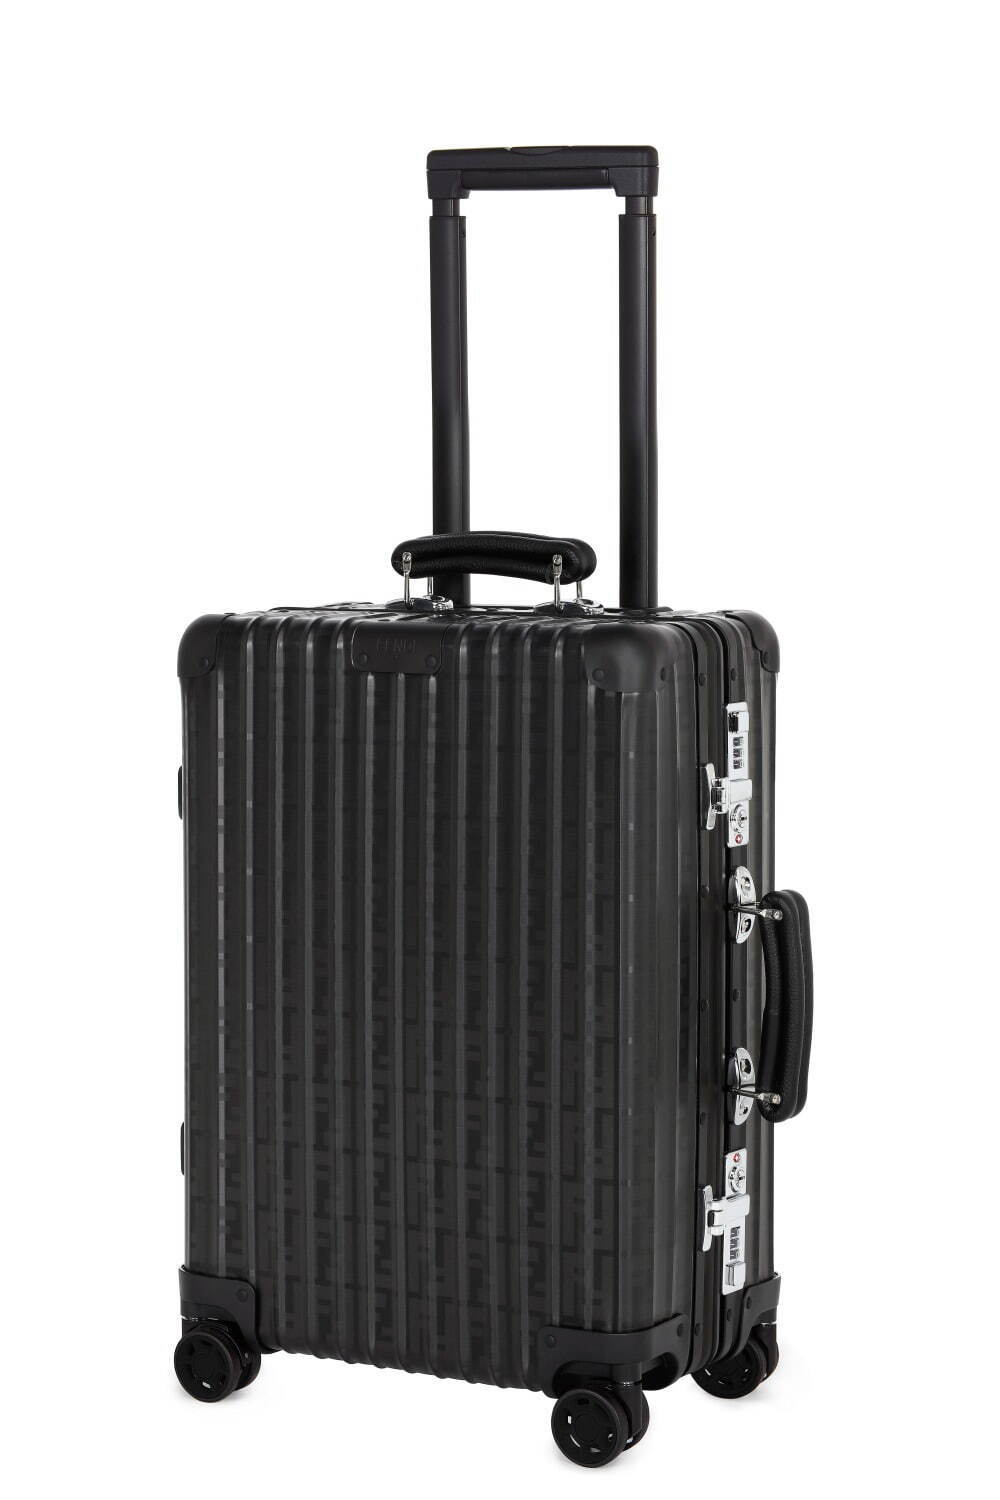 フェンディ×リモワの限定スーツケース、光で“表情が変わる”FFロゴ ...